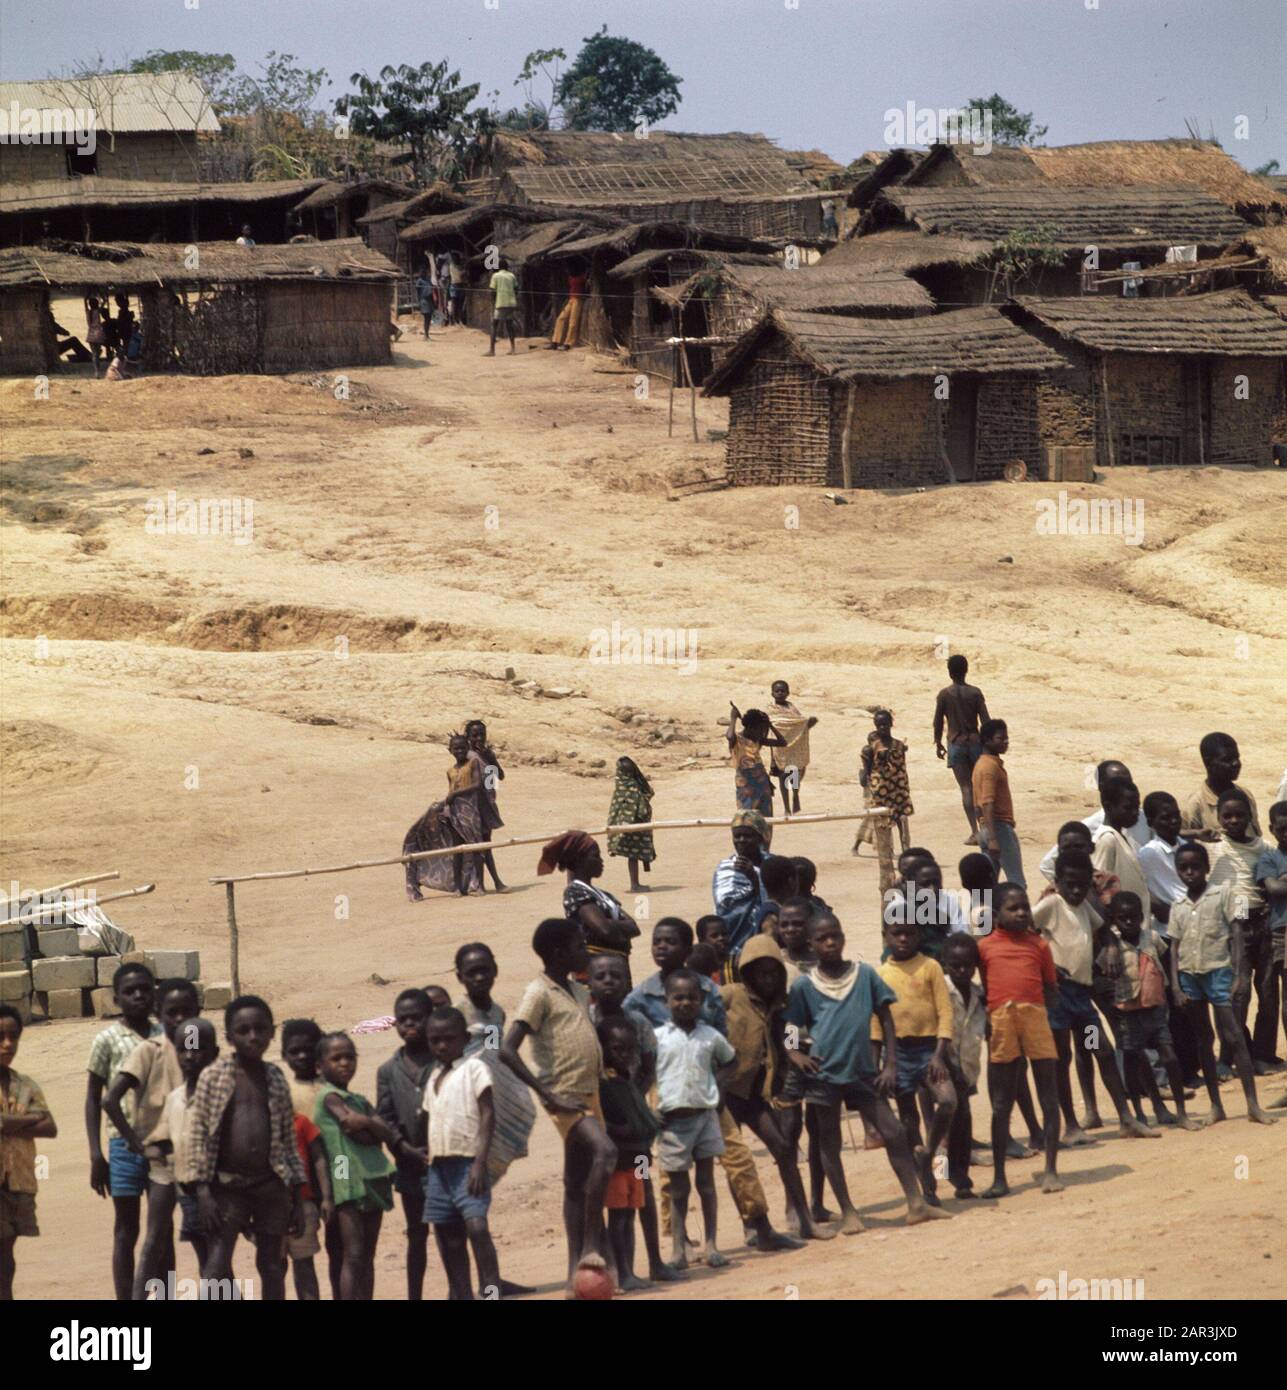 Zaire (früher Belgisch-Kongo); Lager für angolanische Flüchtlinge in Zaire Datum: 16. August 1973 Ort: Angolanische, belgische Republik Kongo, Zaire Schlüsselwörter: REGUIDENTS Stockfoto